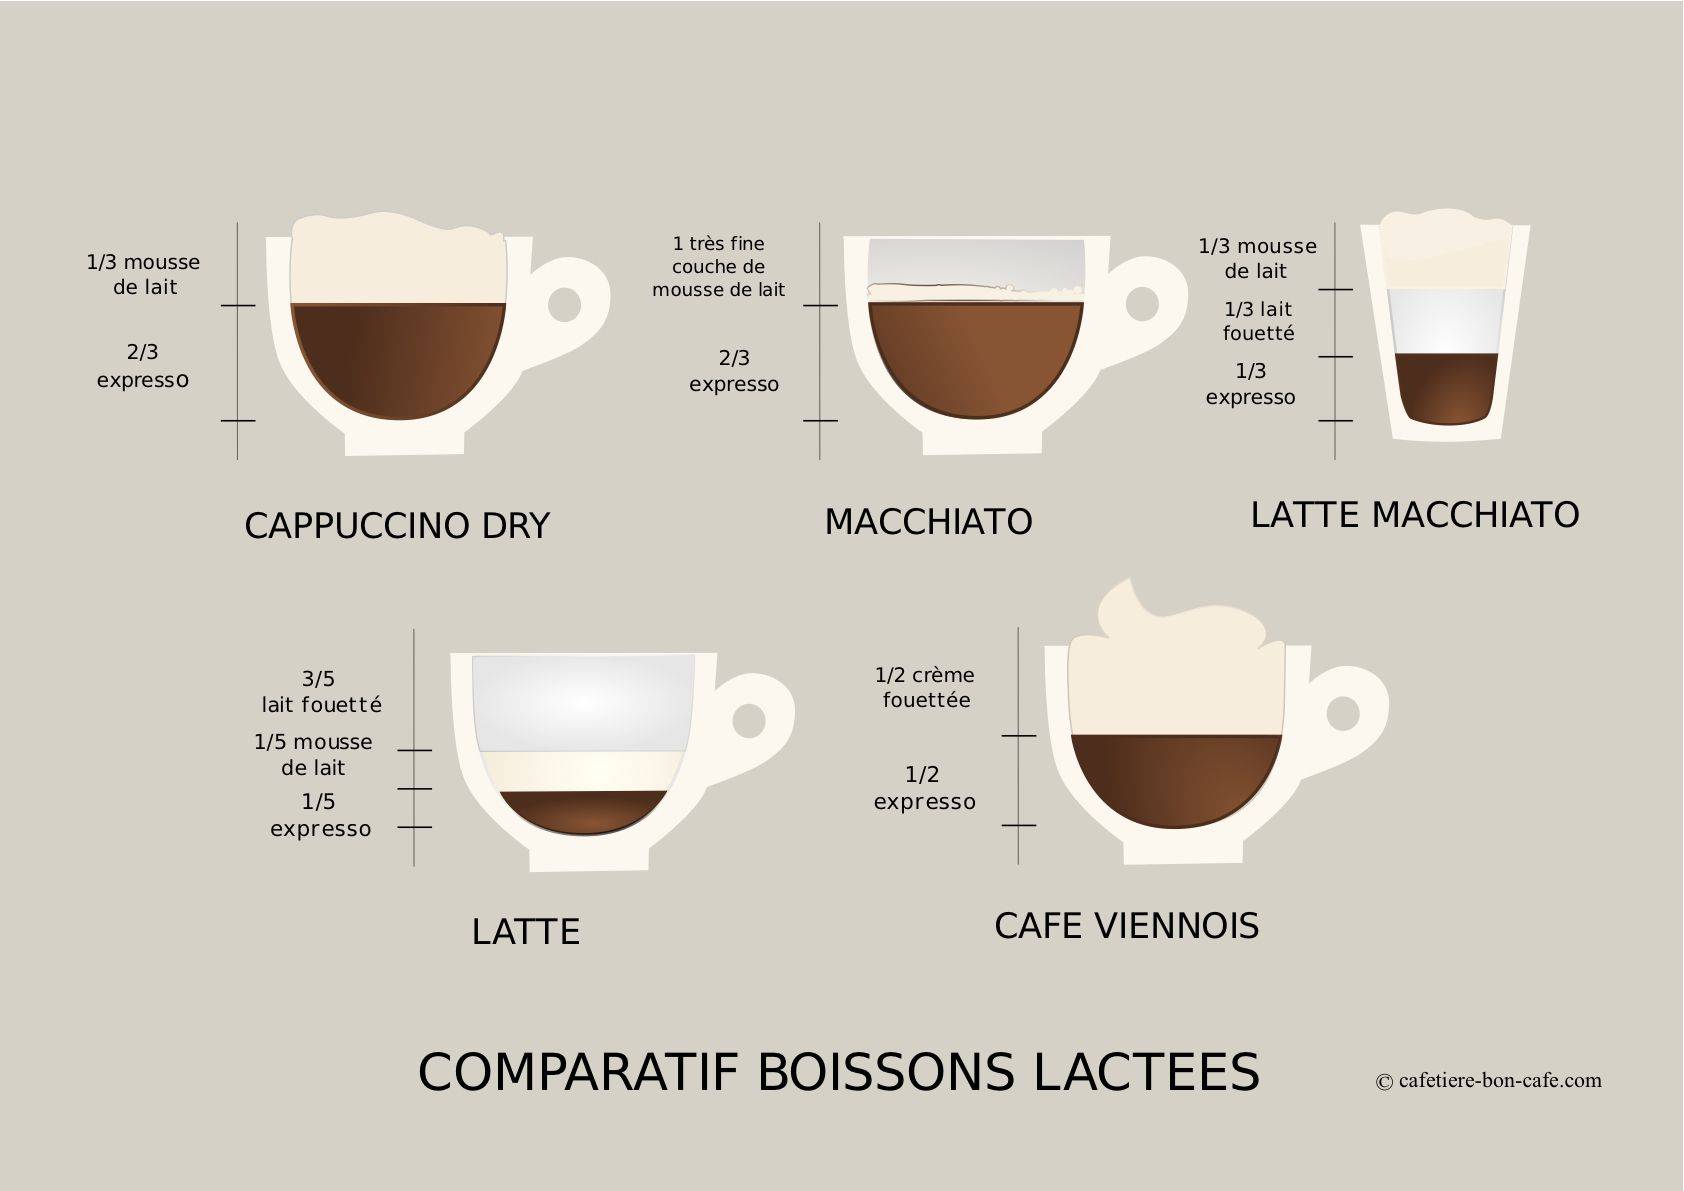 В чем разница между кофе и эспрессо?